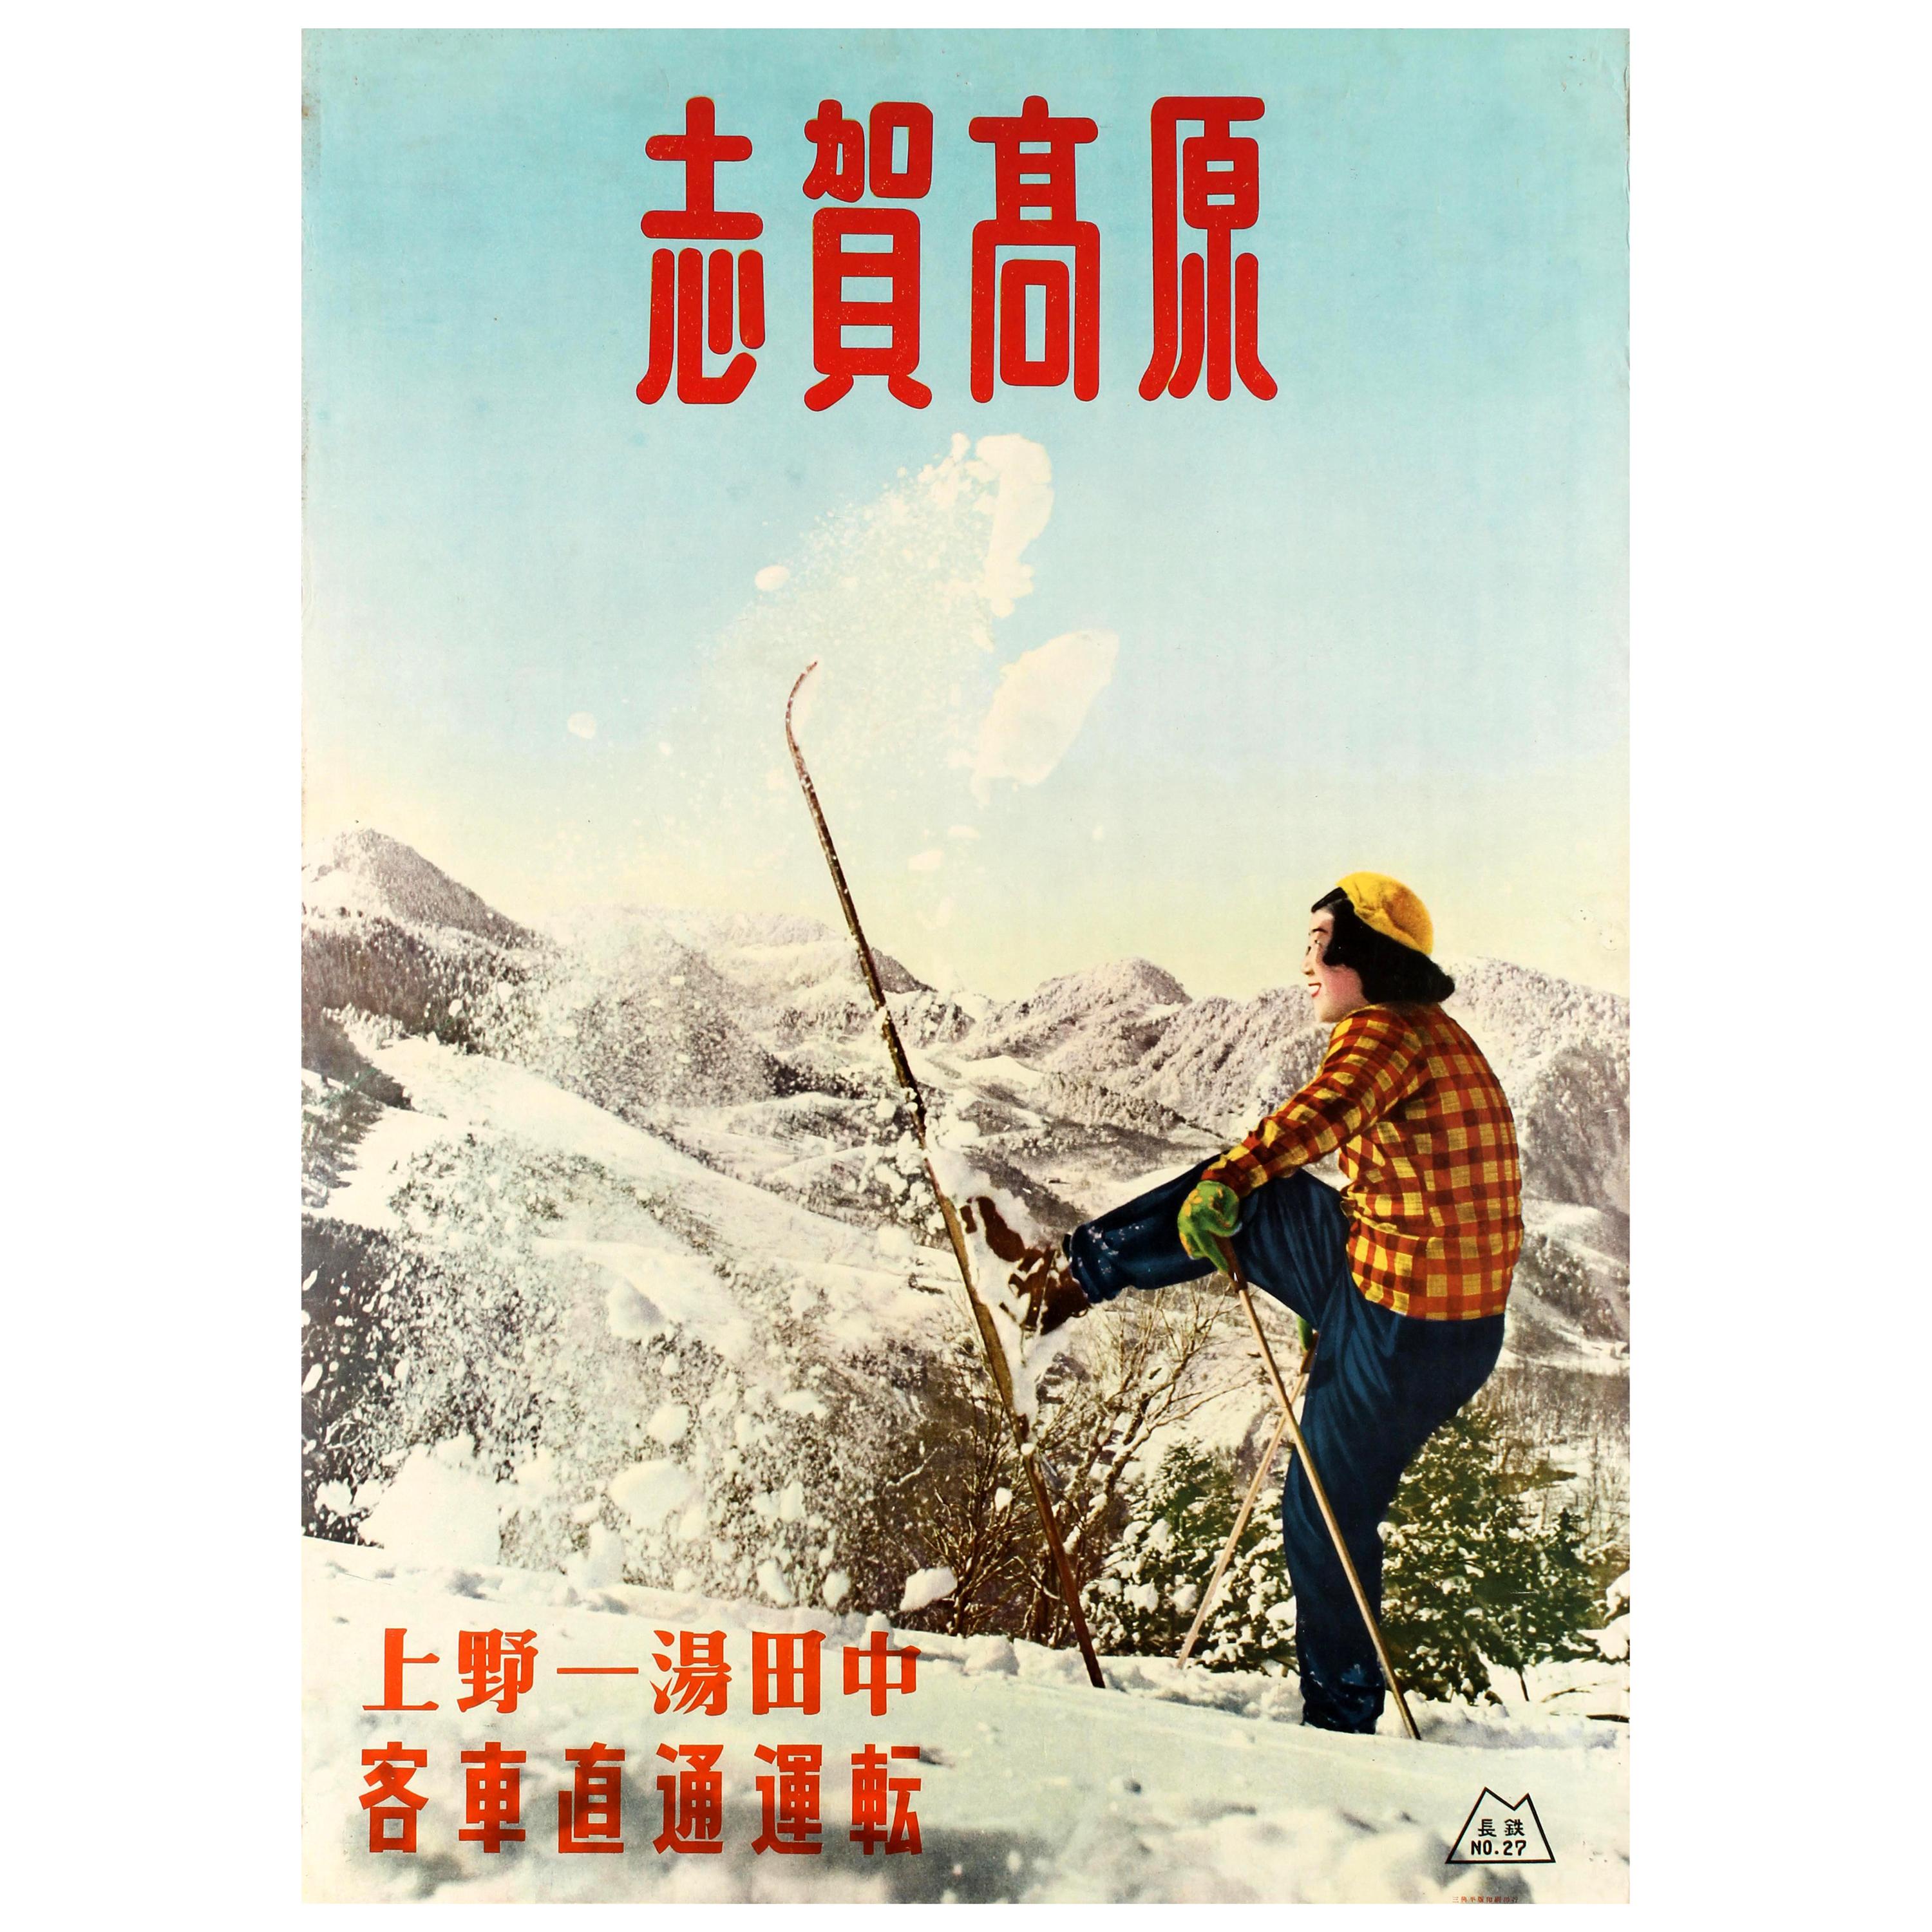 Original Vintage Winter Sport Skiing Poster Shiga Kogen Ski Resort Japan Skier